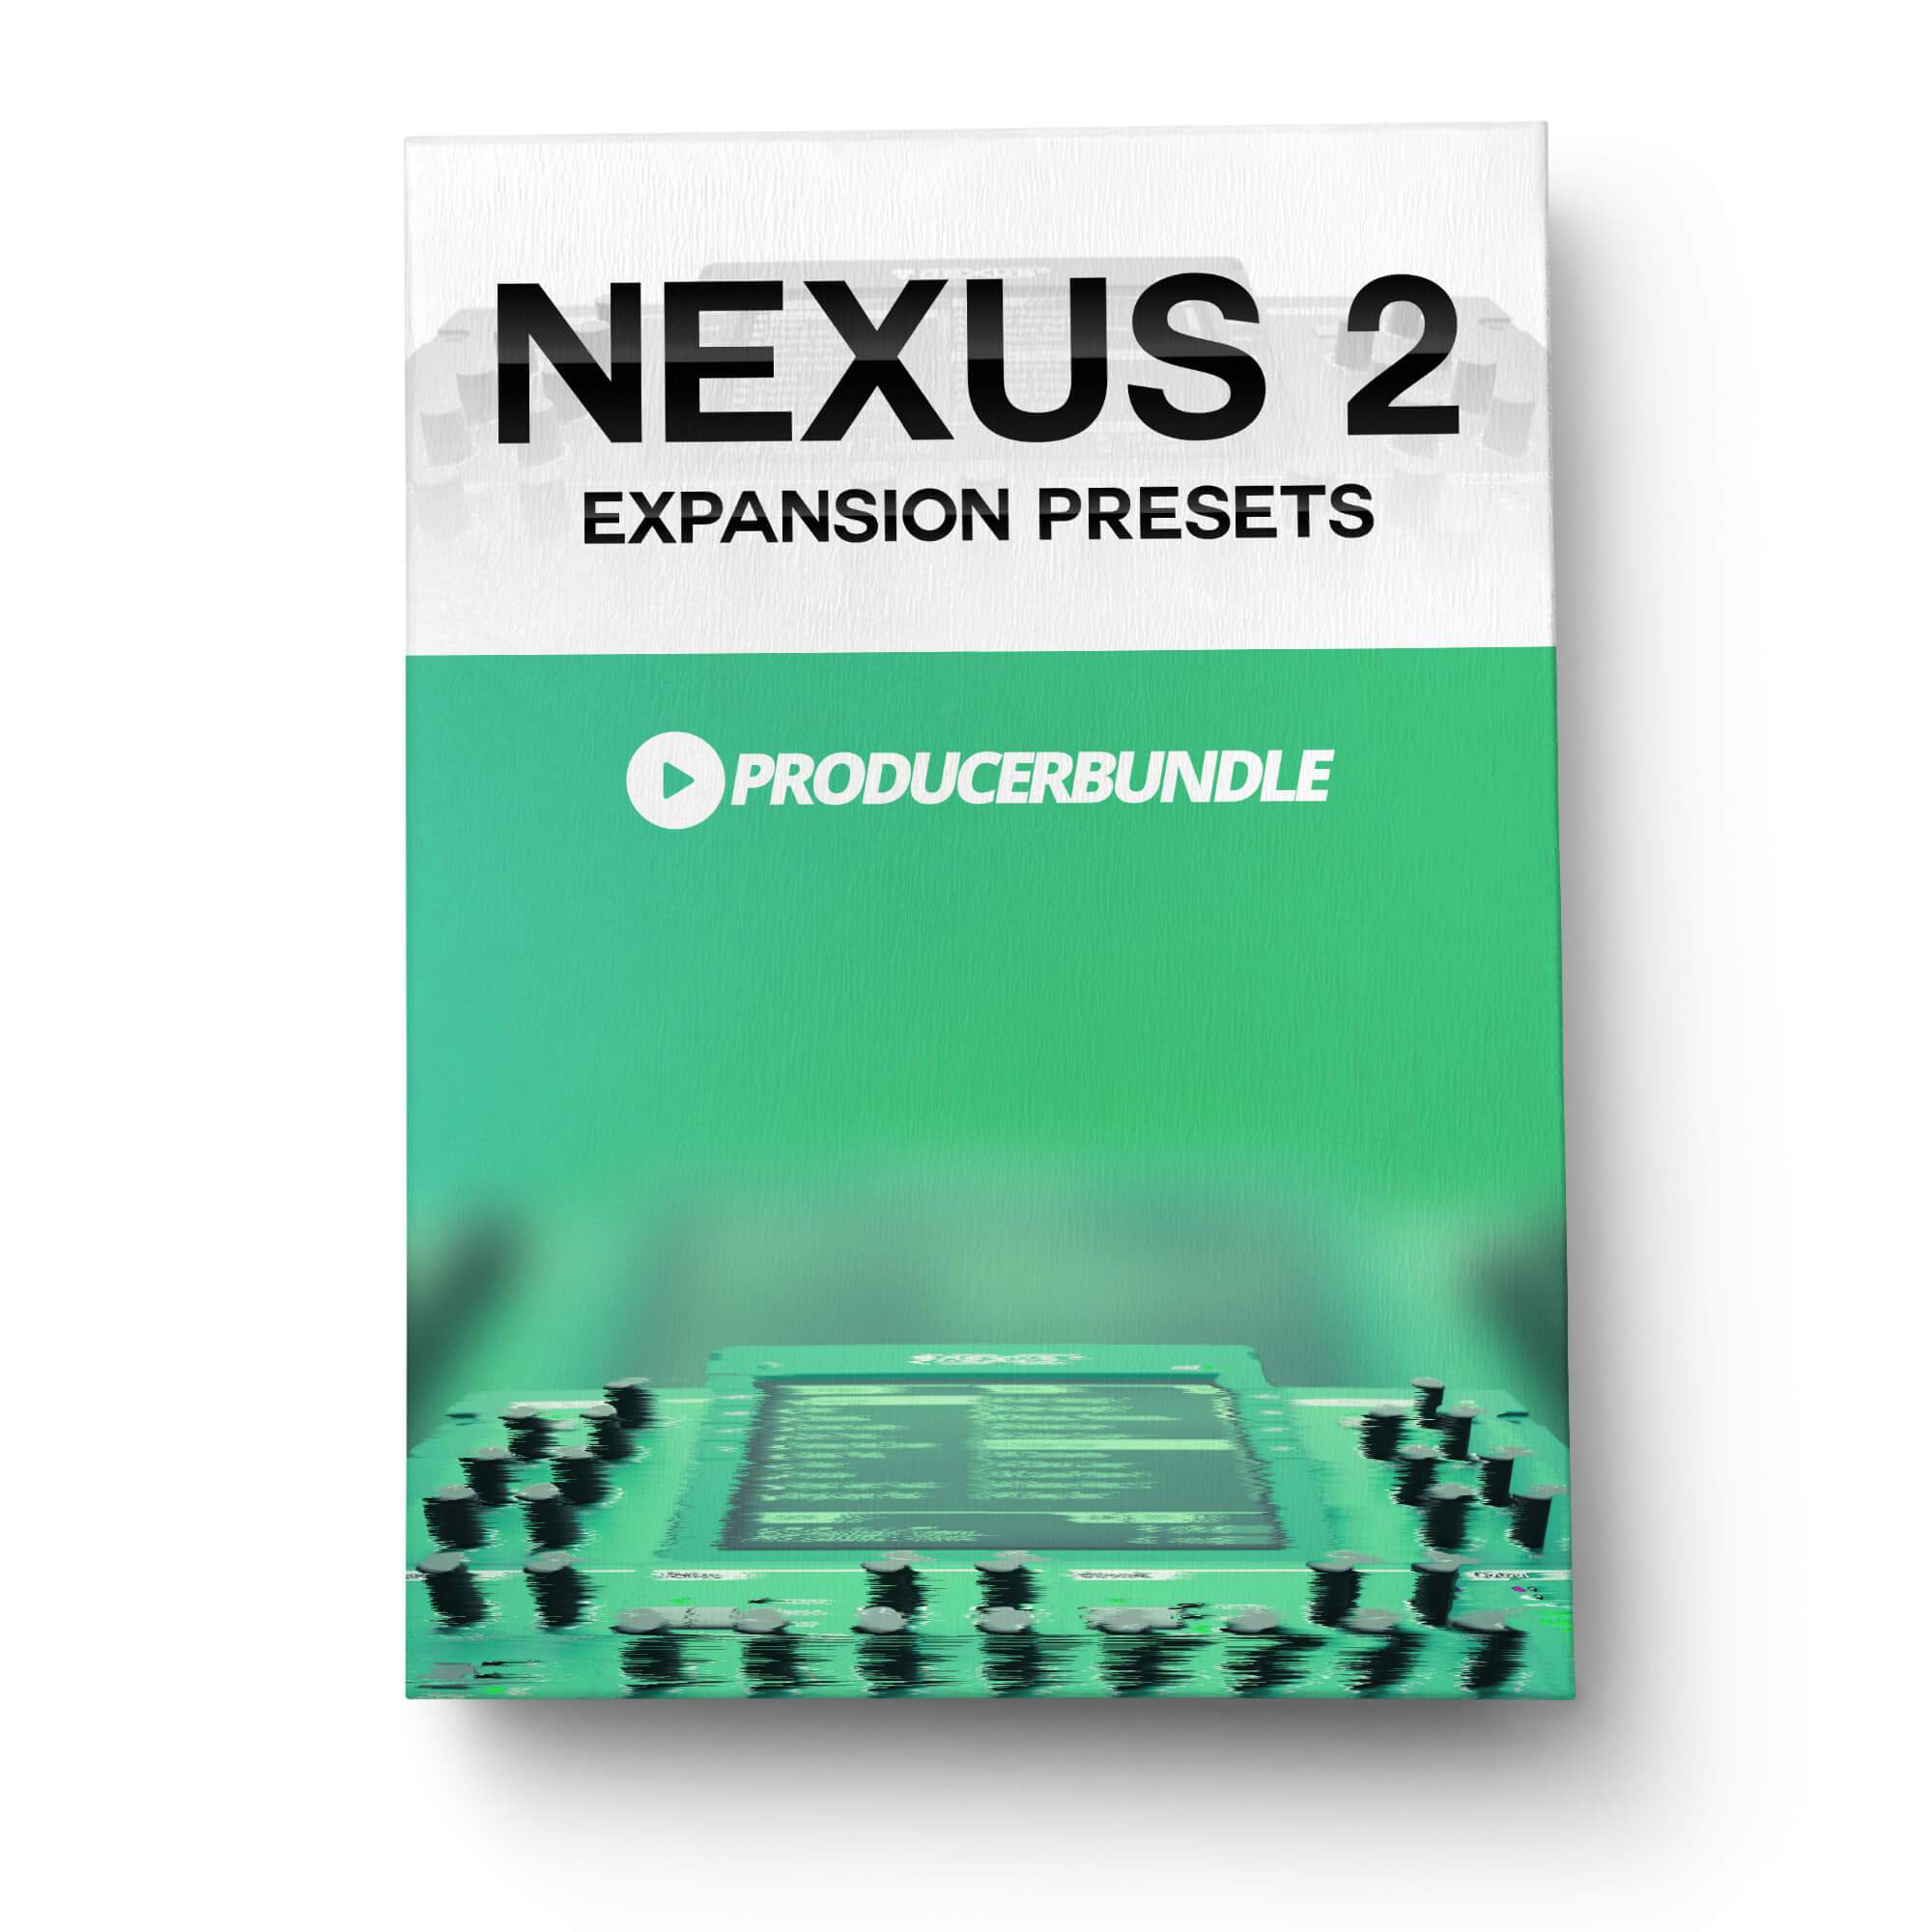 nexus 2 expansions xp free